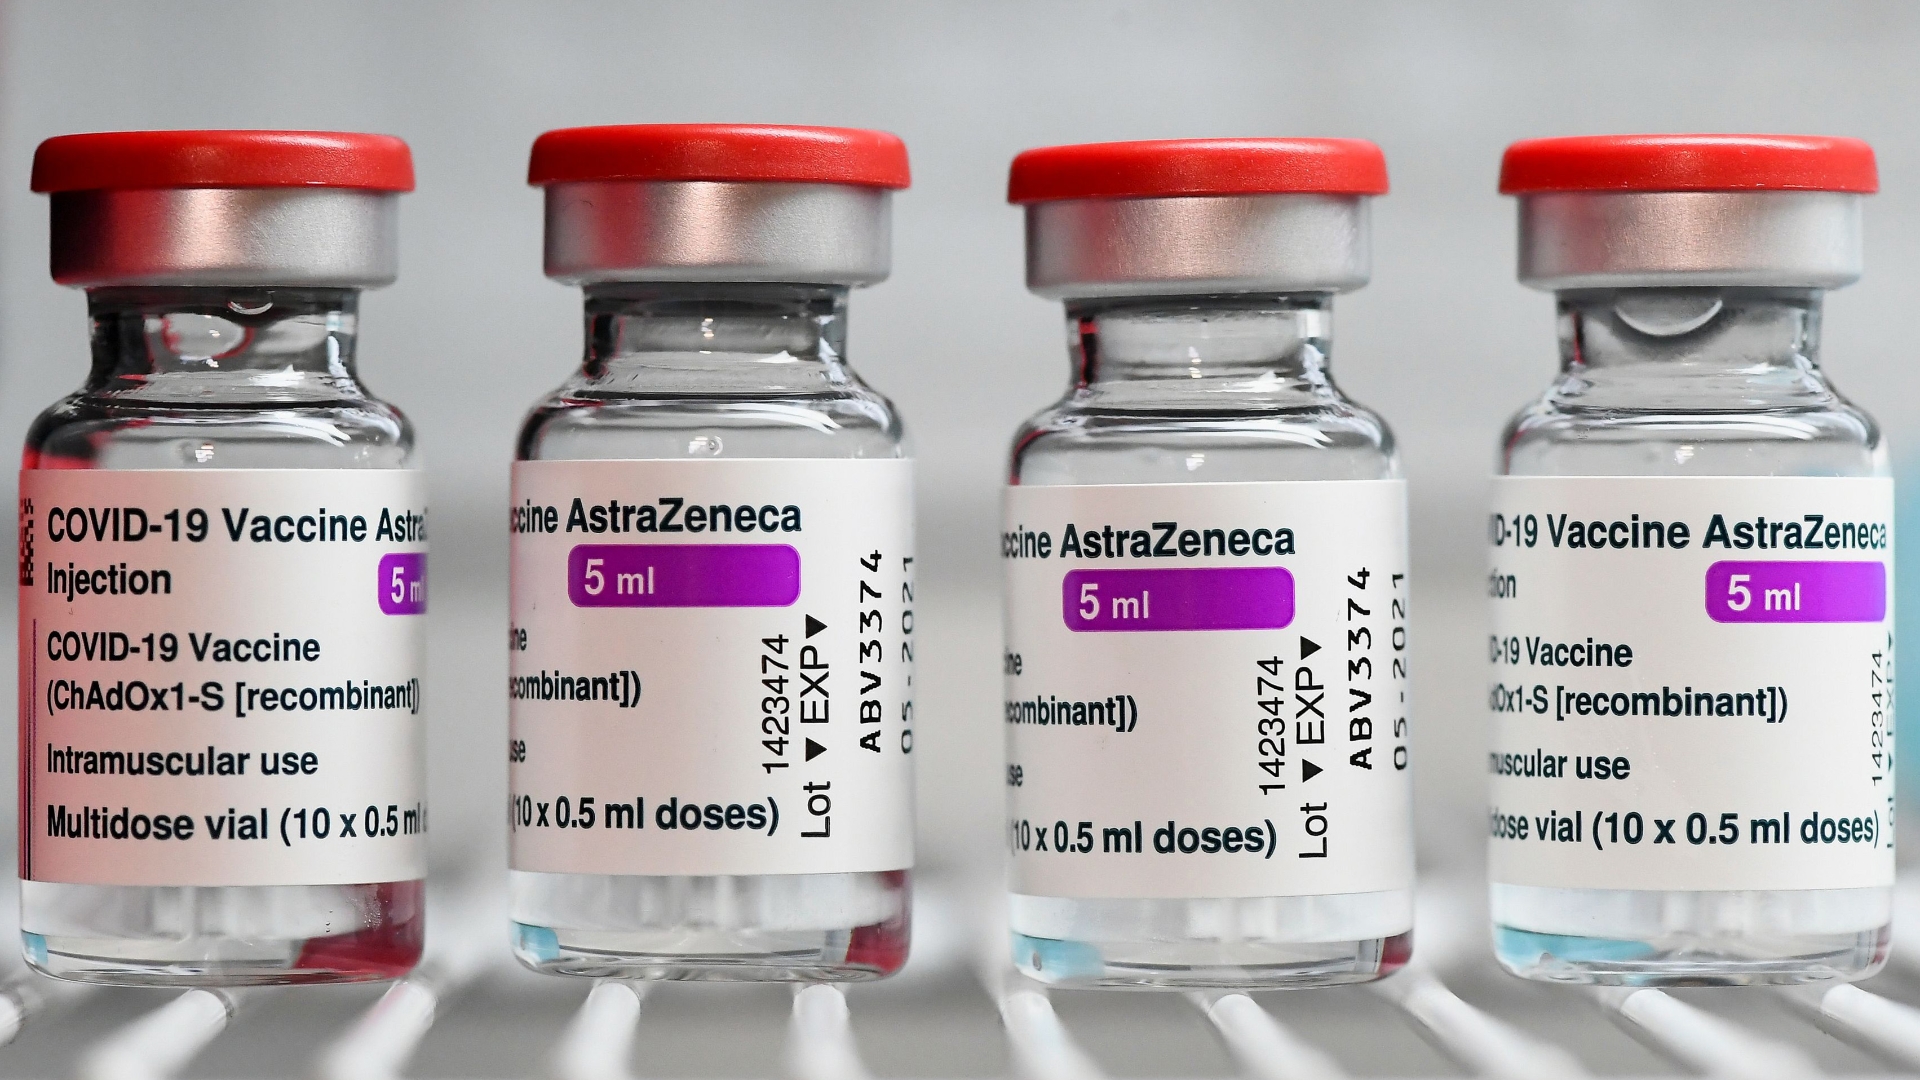 Vacuna AstraZeneca: El ensayo clínico en Estados Unidos revela que tiene  eficacia de 79% contra el COVID-19 - The Washington Post